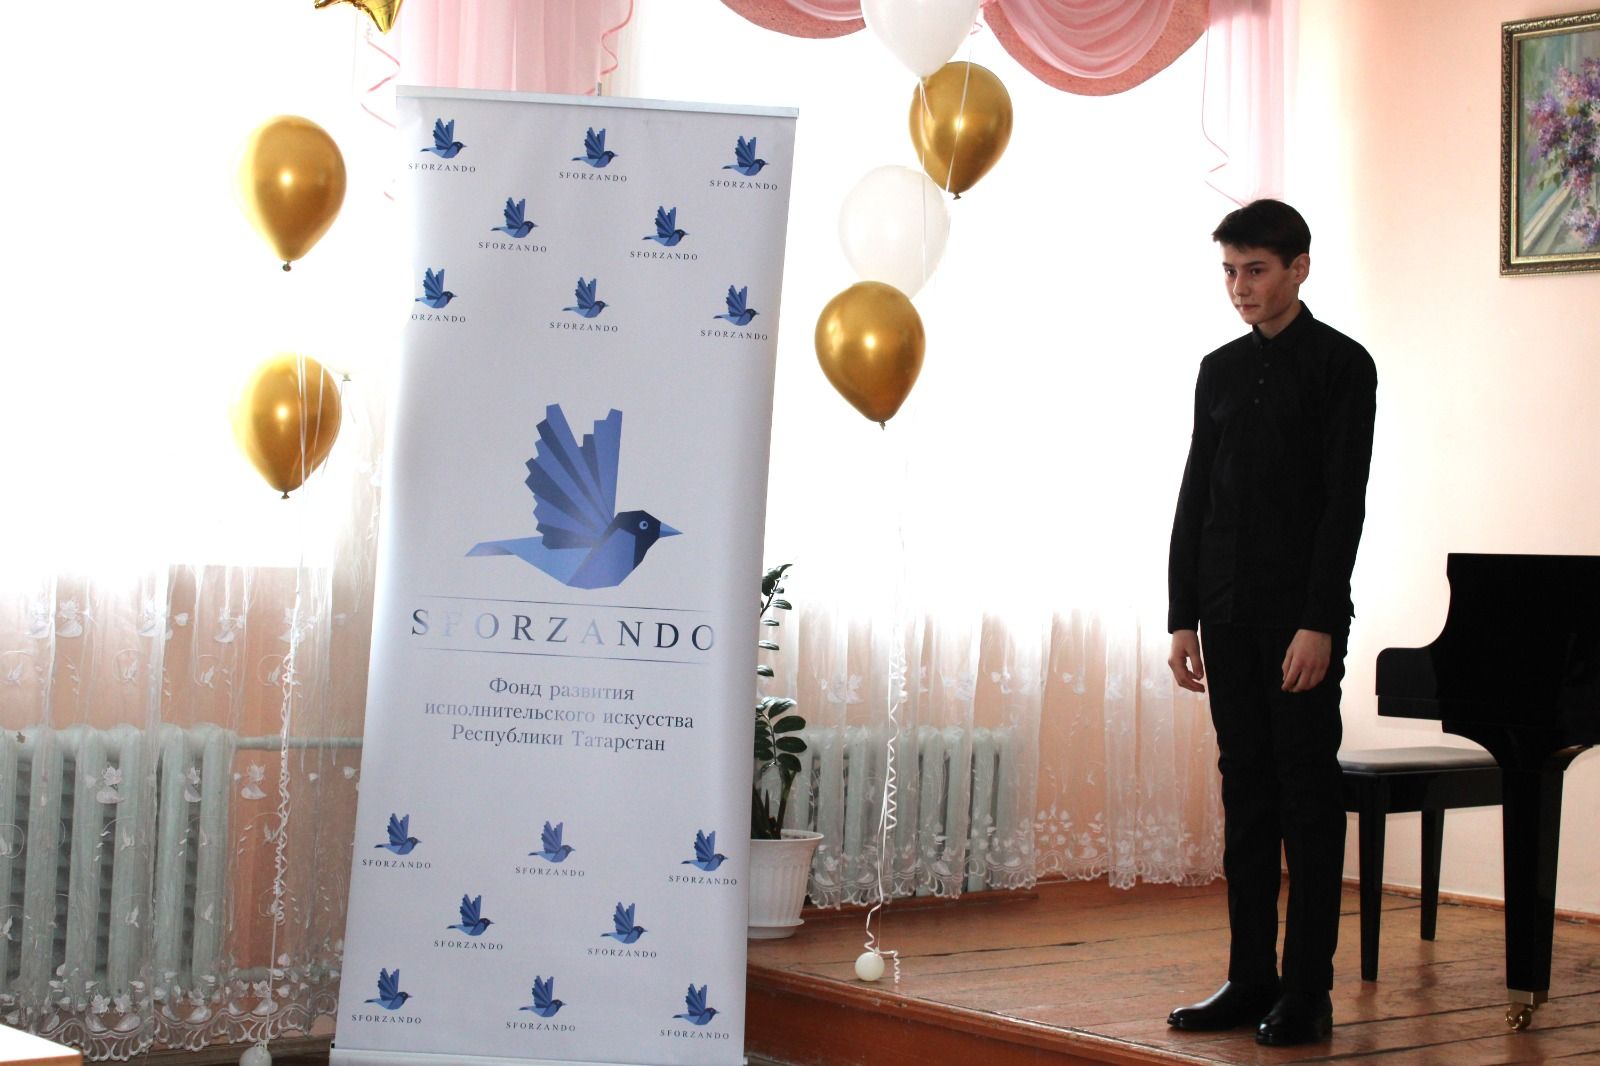 В Азнакаево состоялось открытие форума Благотворительного фонда развития исполнительского искусства РТ  «Усилие»